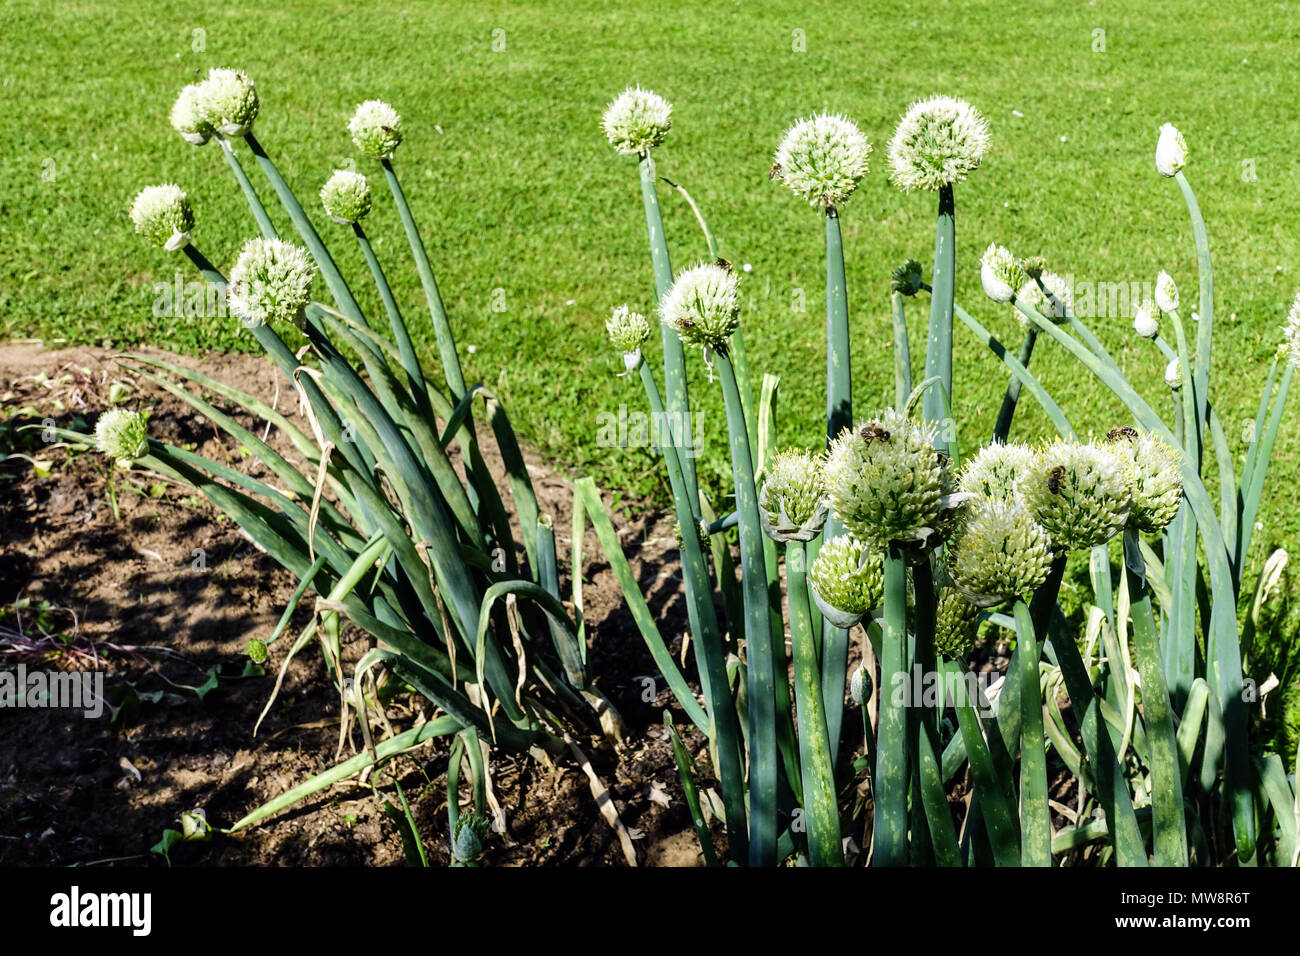 Allium fistulosum, oignon gallois, oignon de groupage, oignon vert long, légumes de jardin Banque D'Images